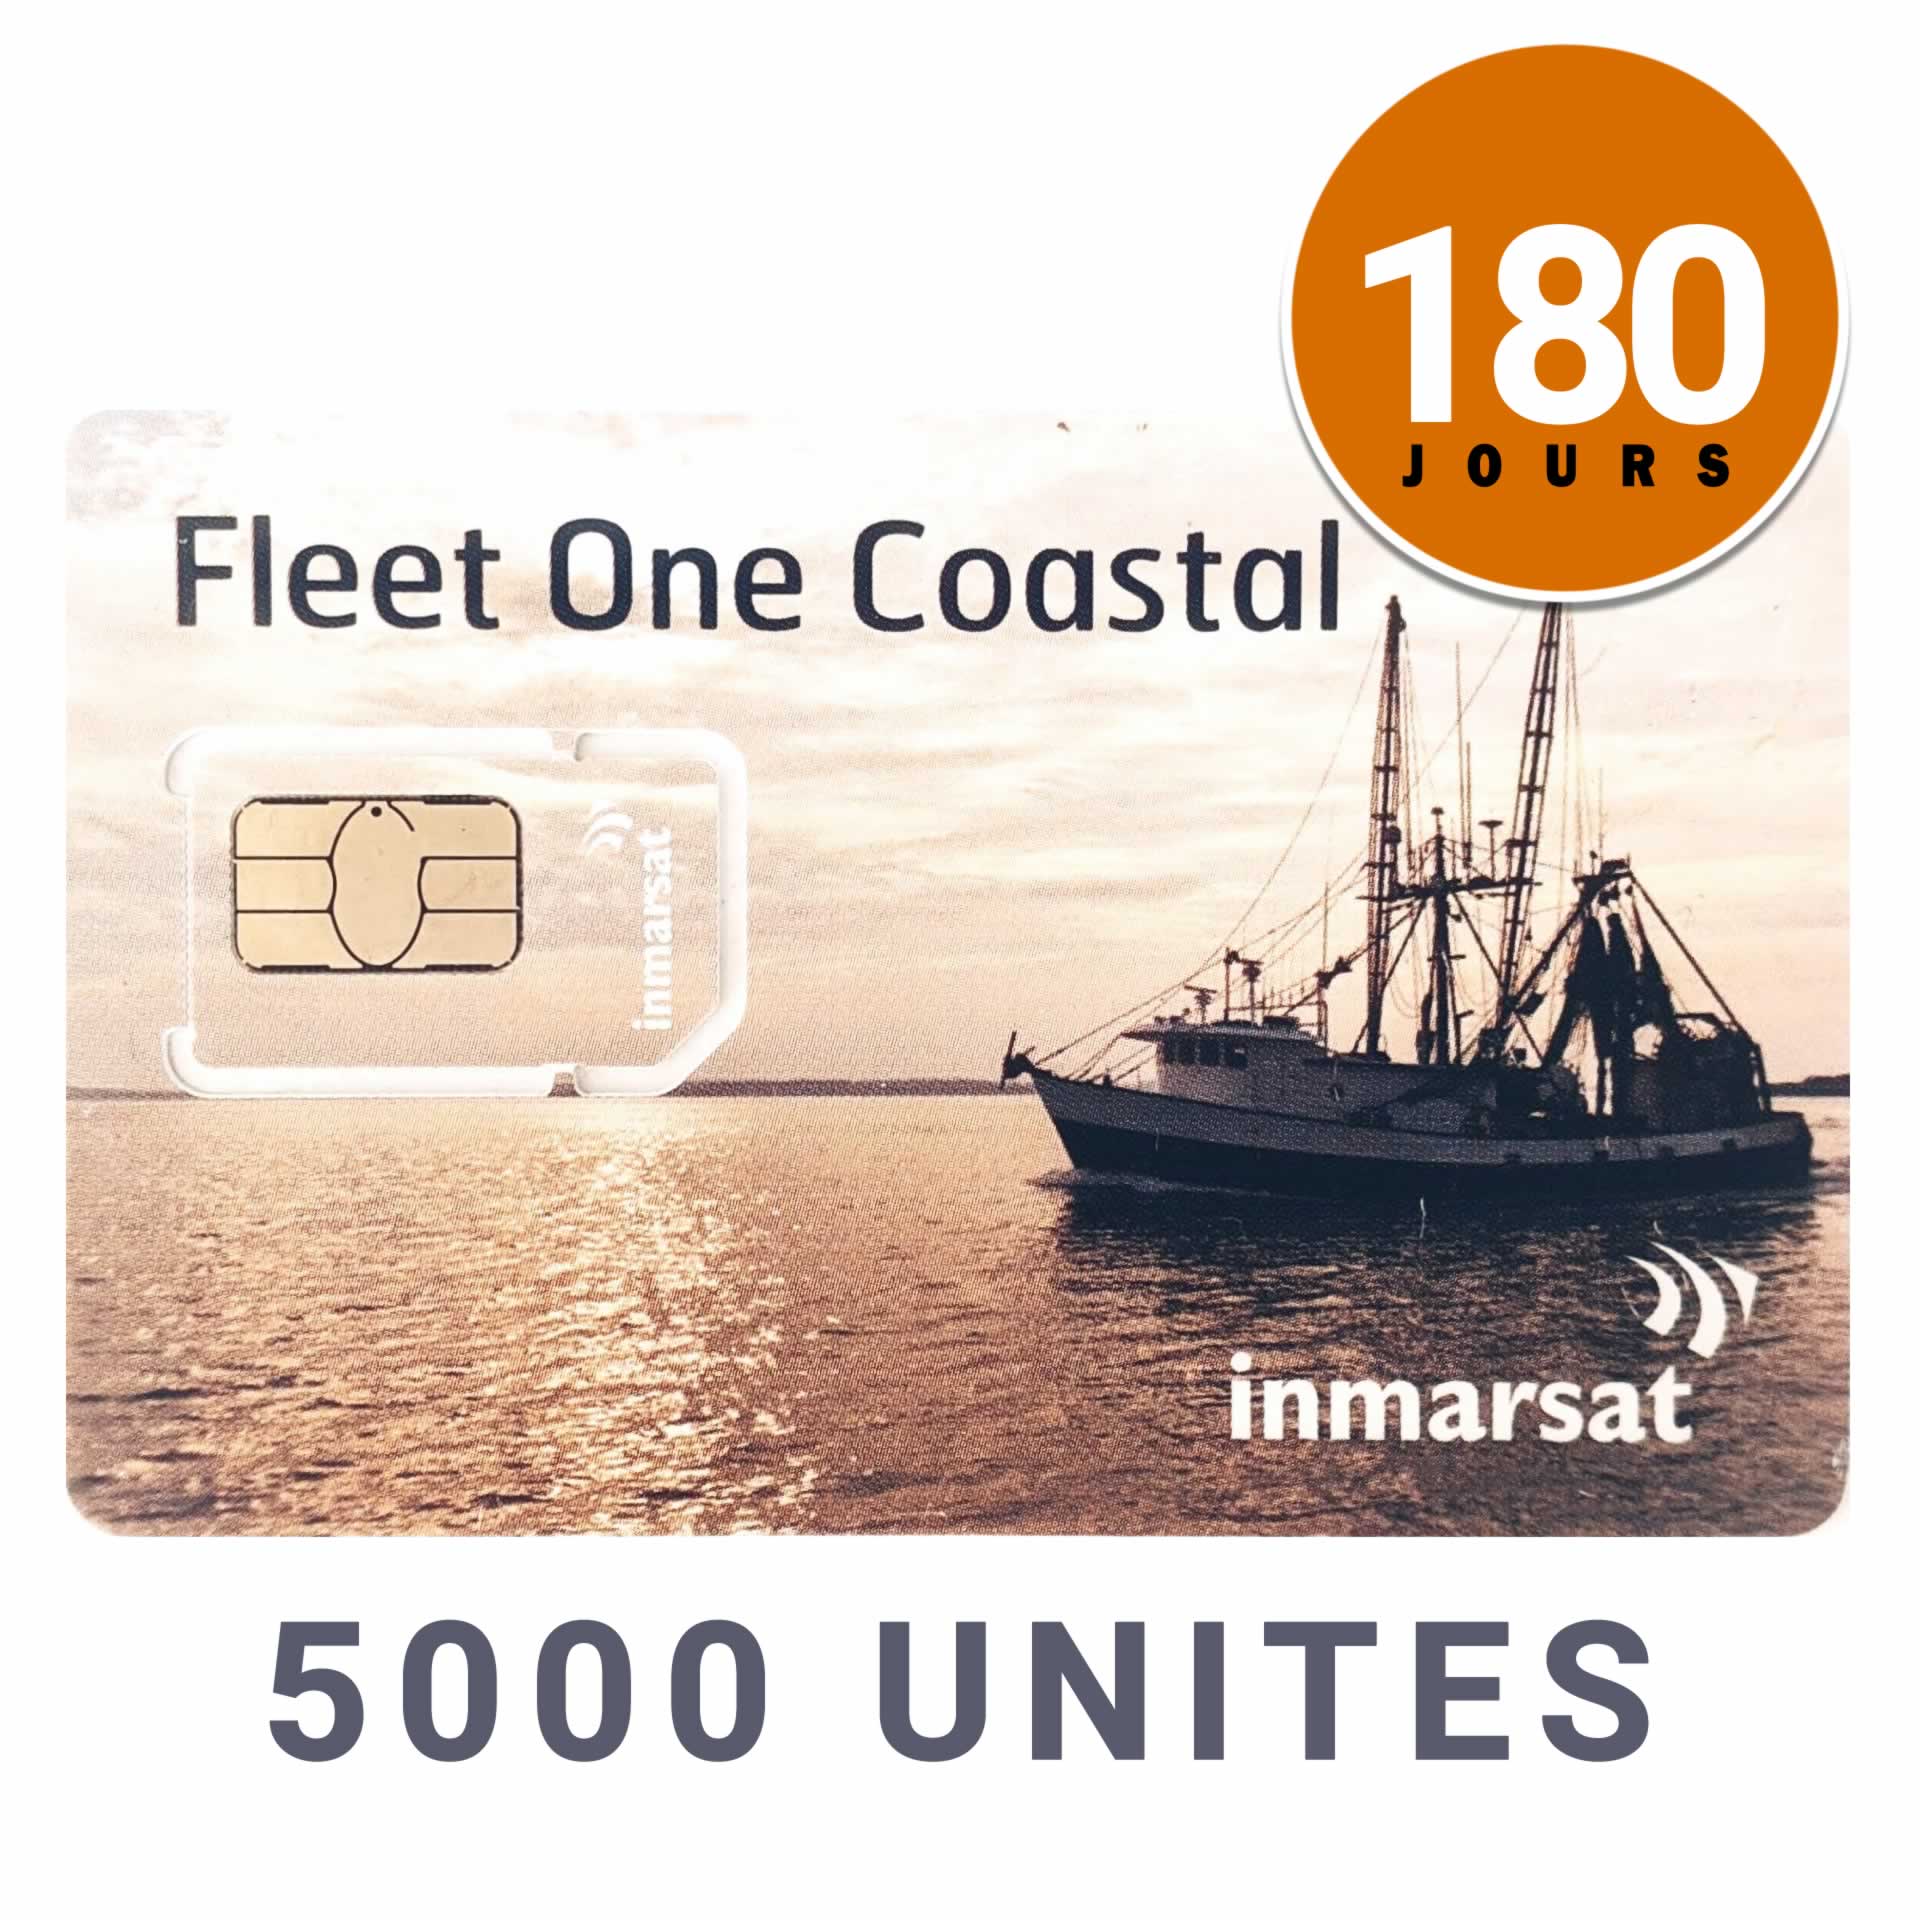 INMARSAT Prepaid Card CÔTIER FLEET ONE - 5000 UNITS - 180 DAYS